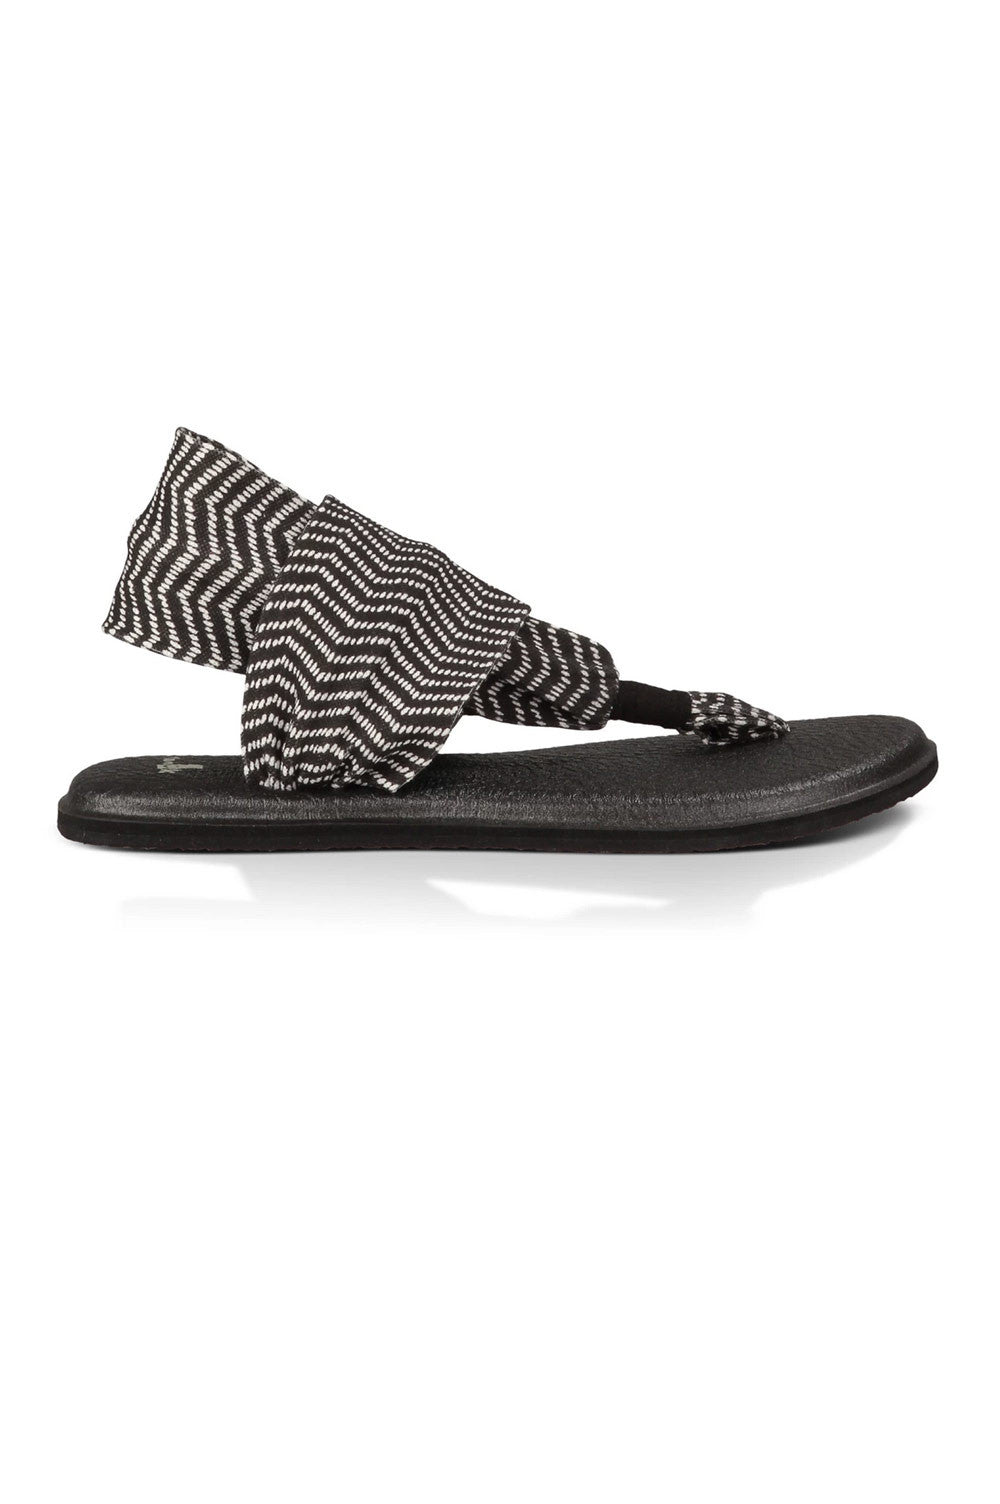 Sanuk Yoga Mat Yoga Sling 2 Prints Sandals– Mainland Skate & Surf